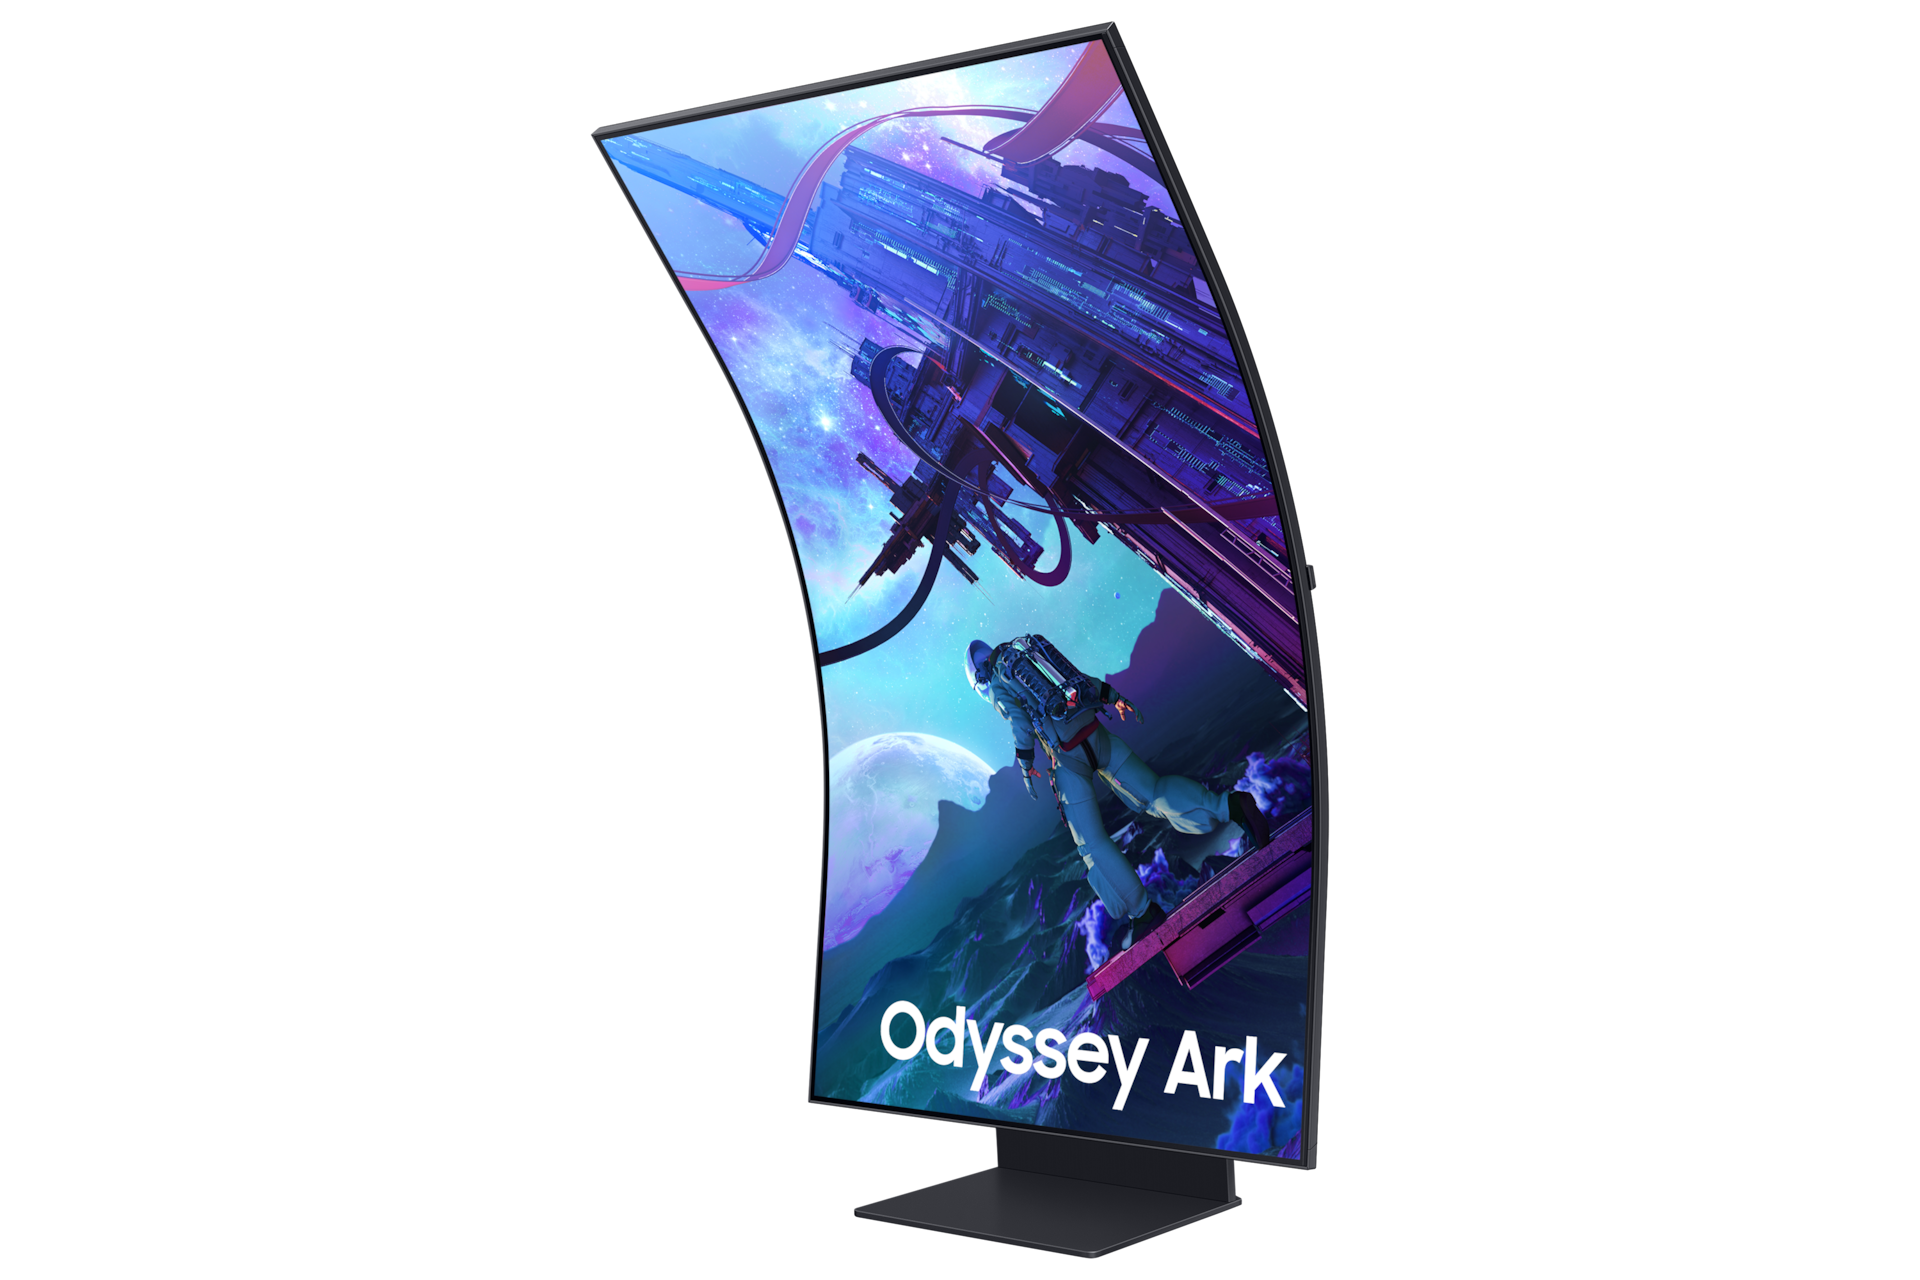 Monitor Gamingowy Odyssey Ark G9 55'', model LS55CG970NUXDU, widok w pozycji wertykalnej po skosie w lewo